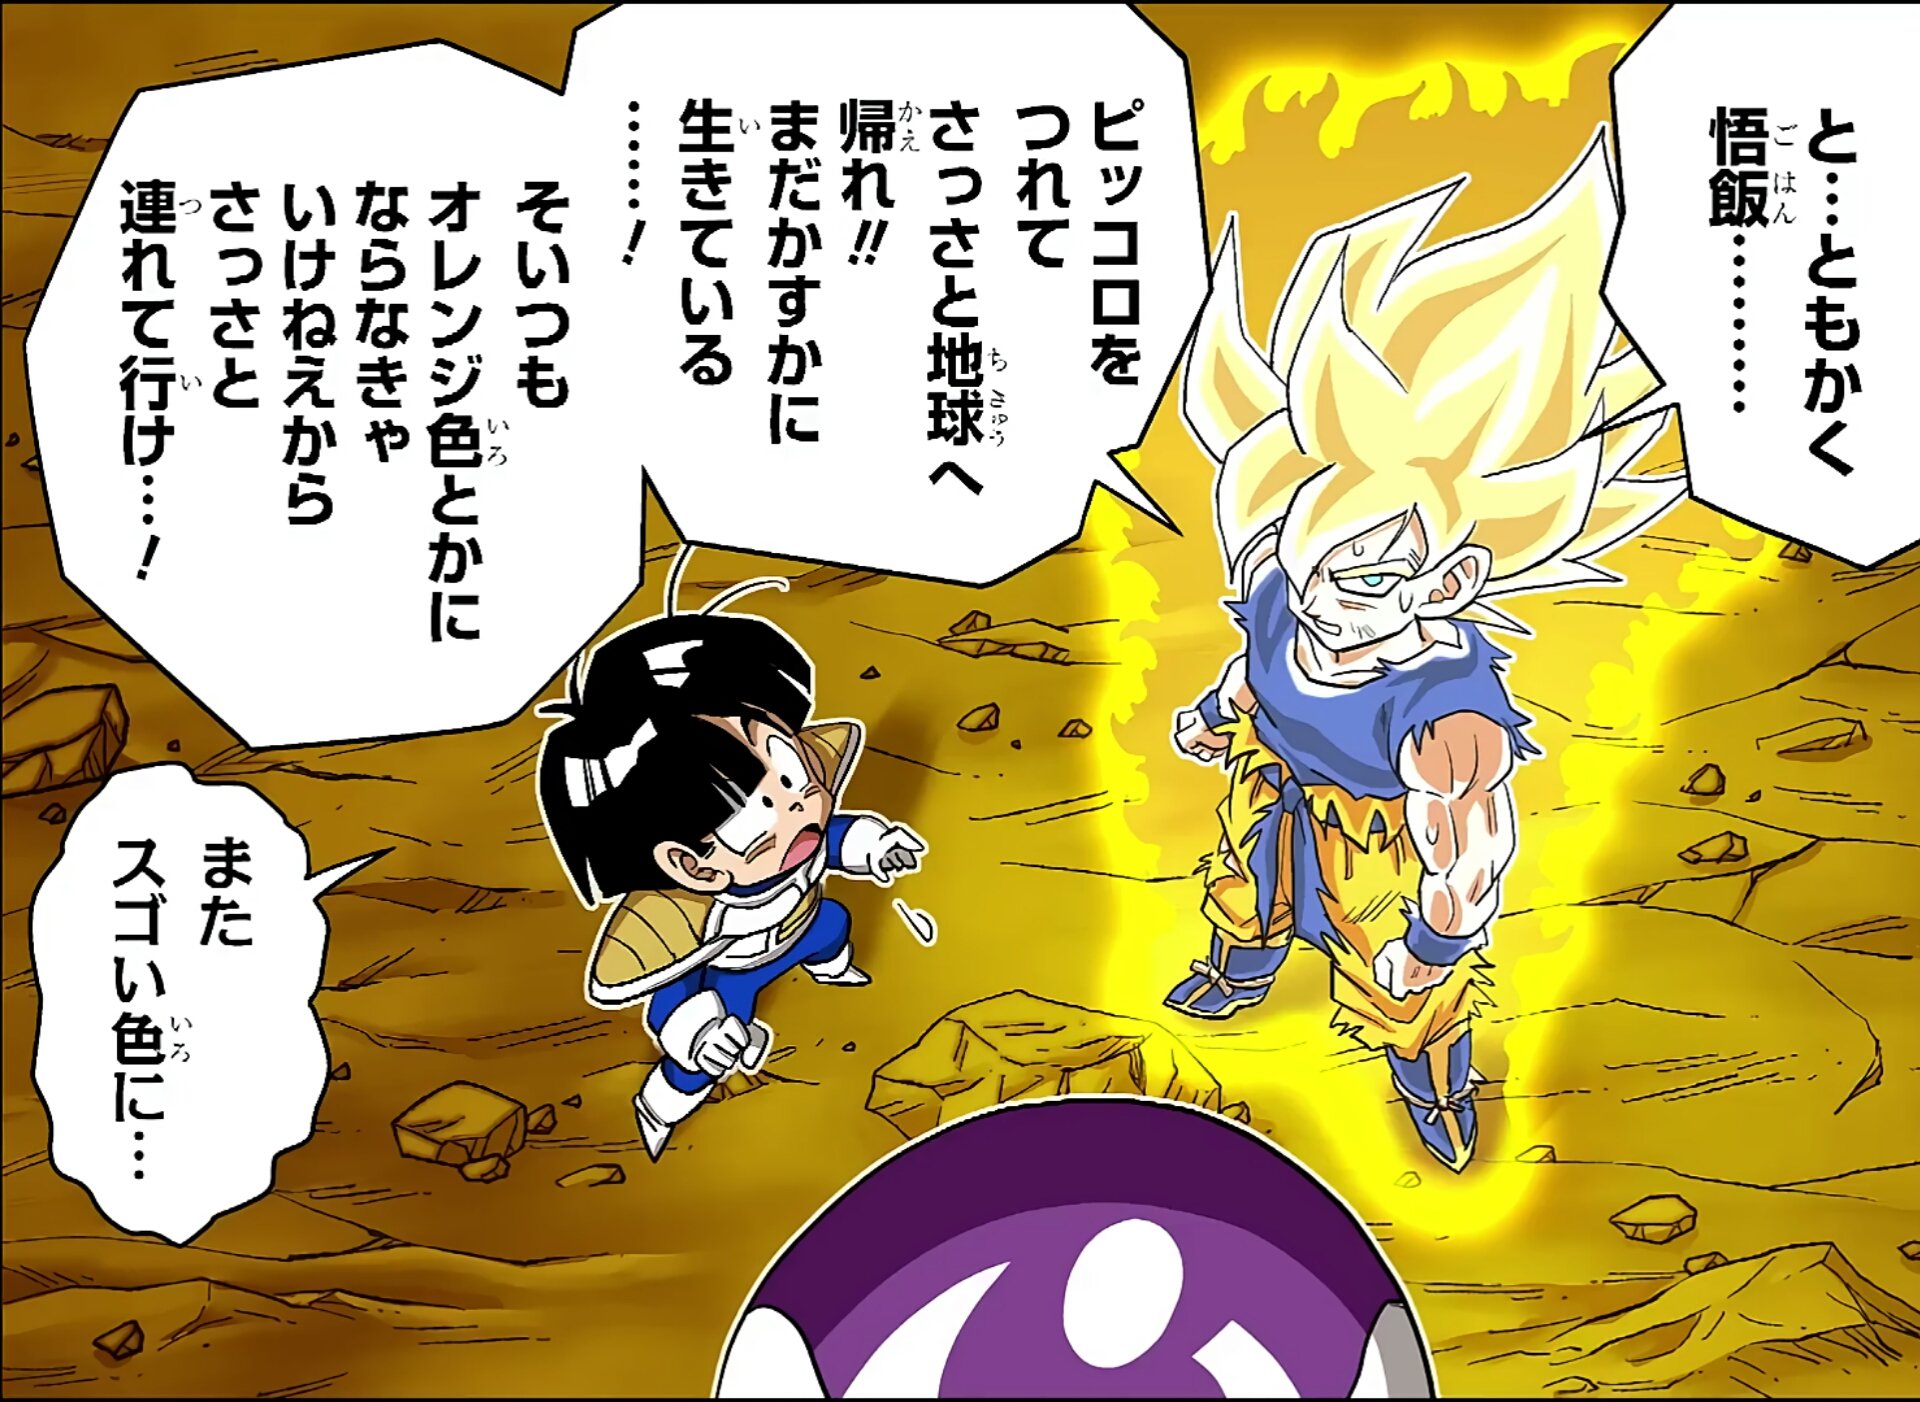 Sekai DB - ¿Qué? 👀 El capítulo 91 del manga de Dragon Ball Super ha sido  filtrado. Scans en HD y con traducción de fans en Inglés xd 😑 (Link en los